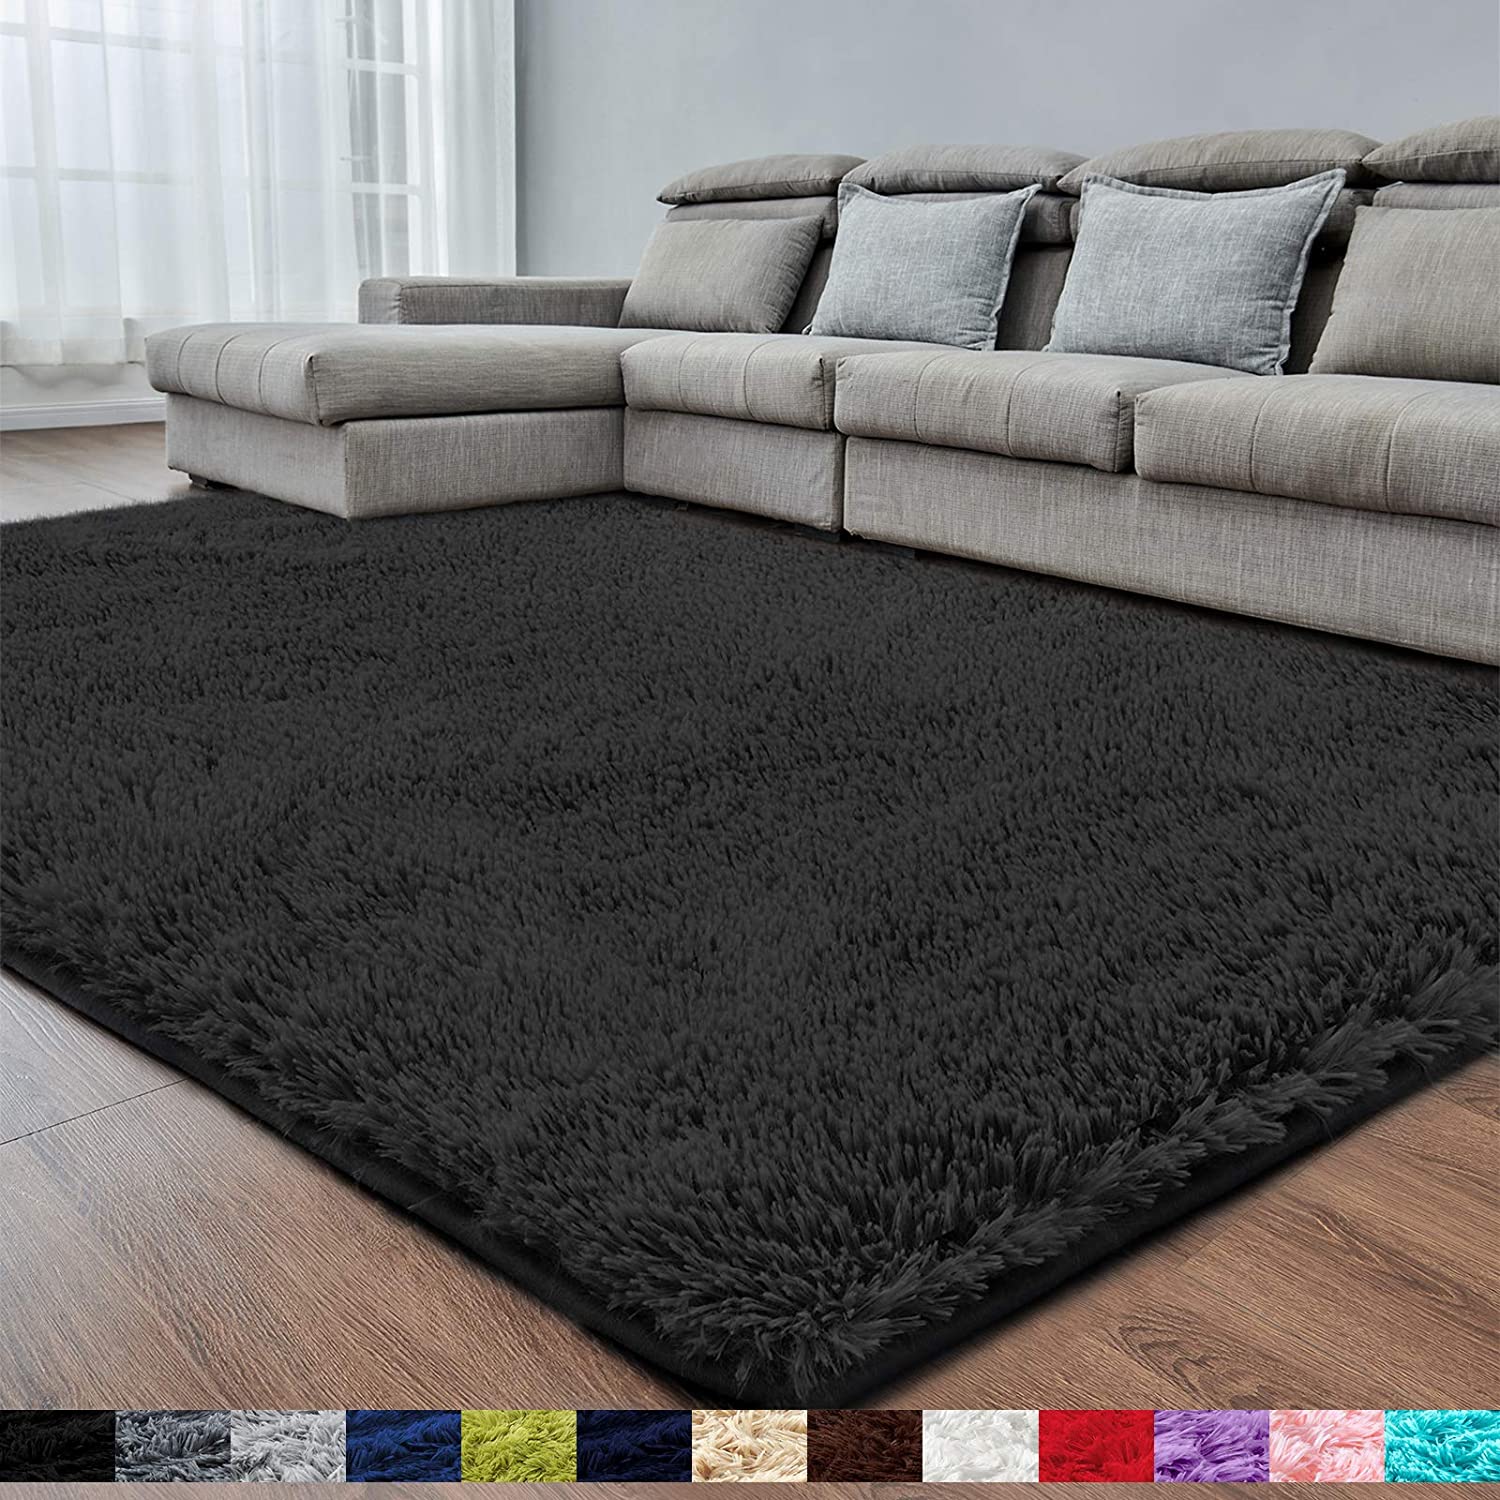 Black Soft Area Rug for Bedroom, 2x4, Fluffy Rug